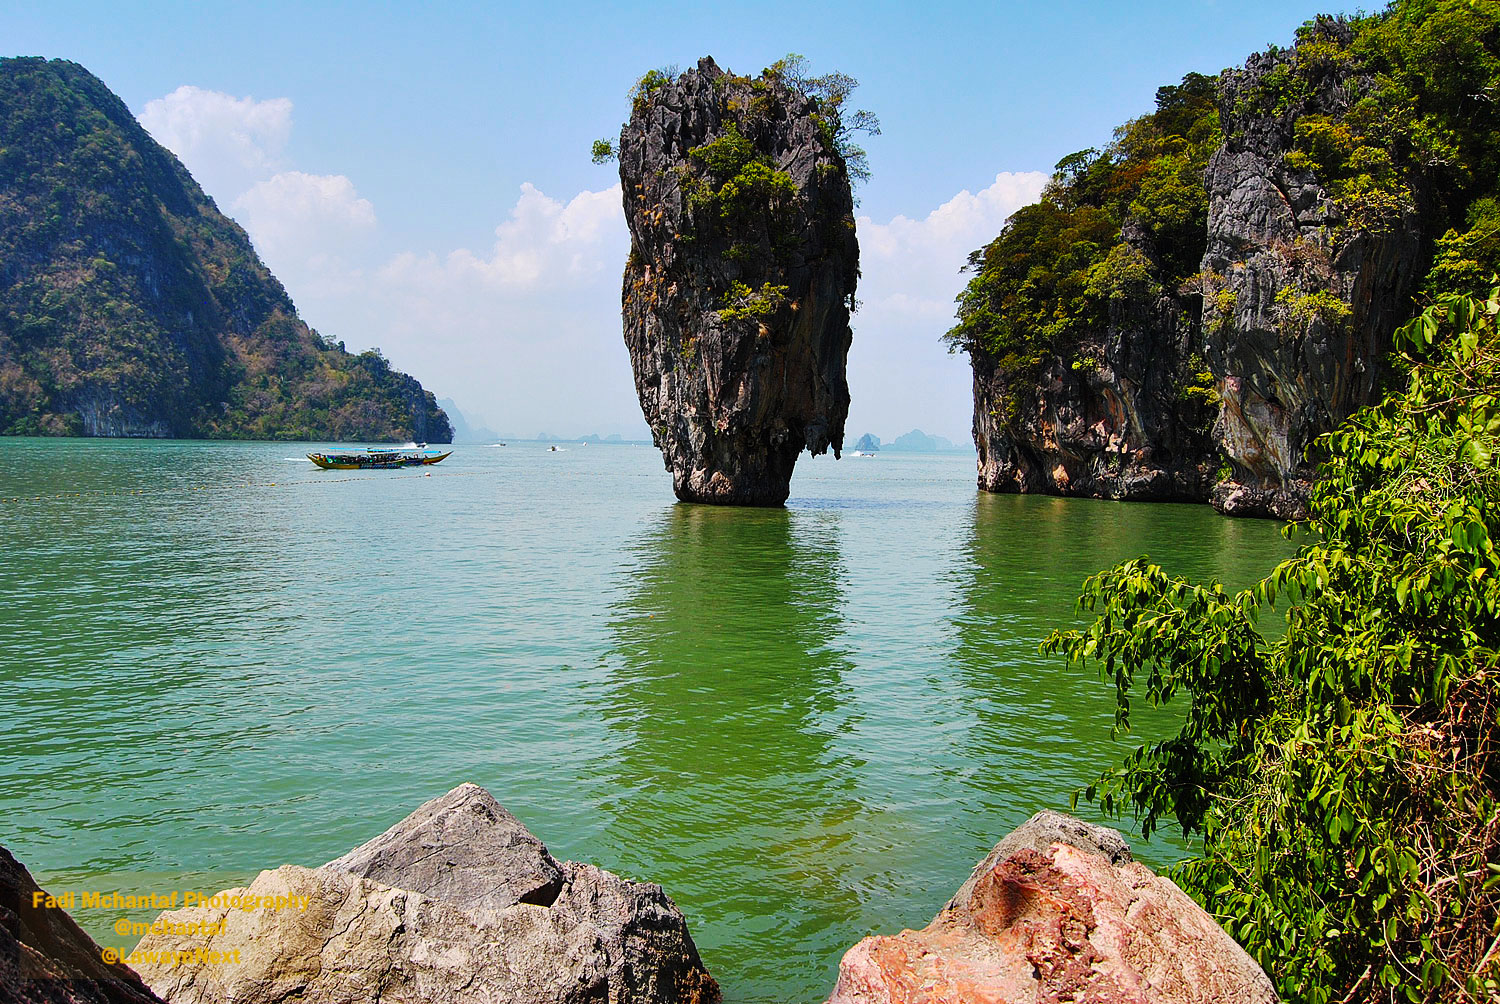 James Bond Island or Phang Nga Bay